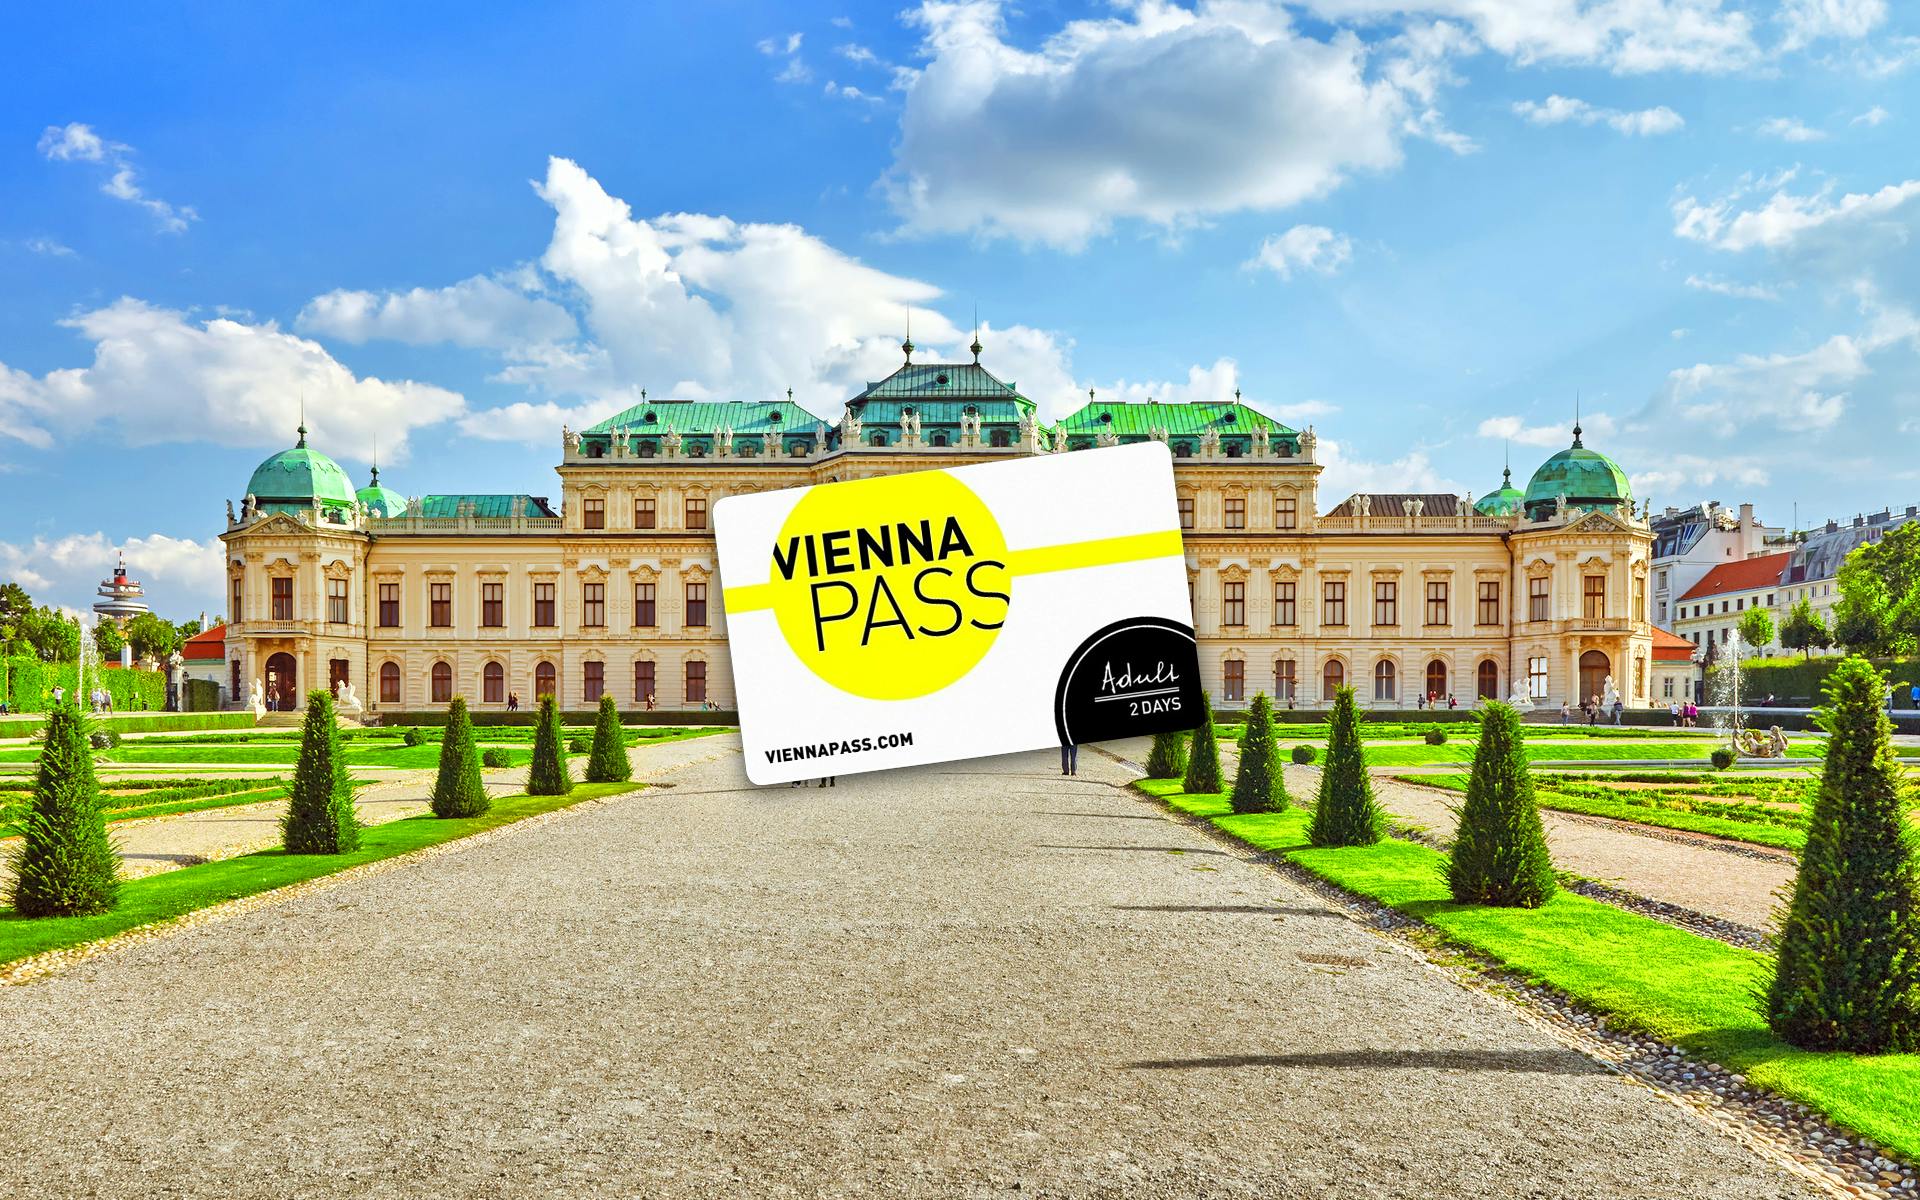 Vienna PASS met gratis toegang tot meer dan 90 attracties